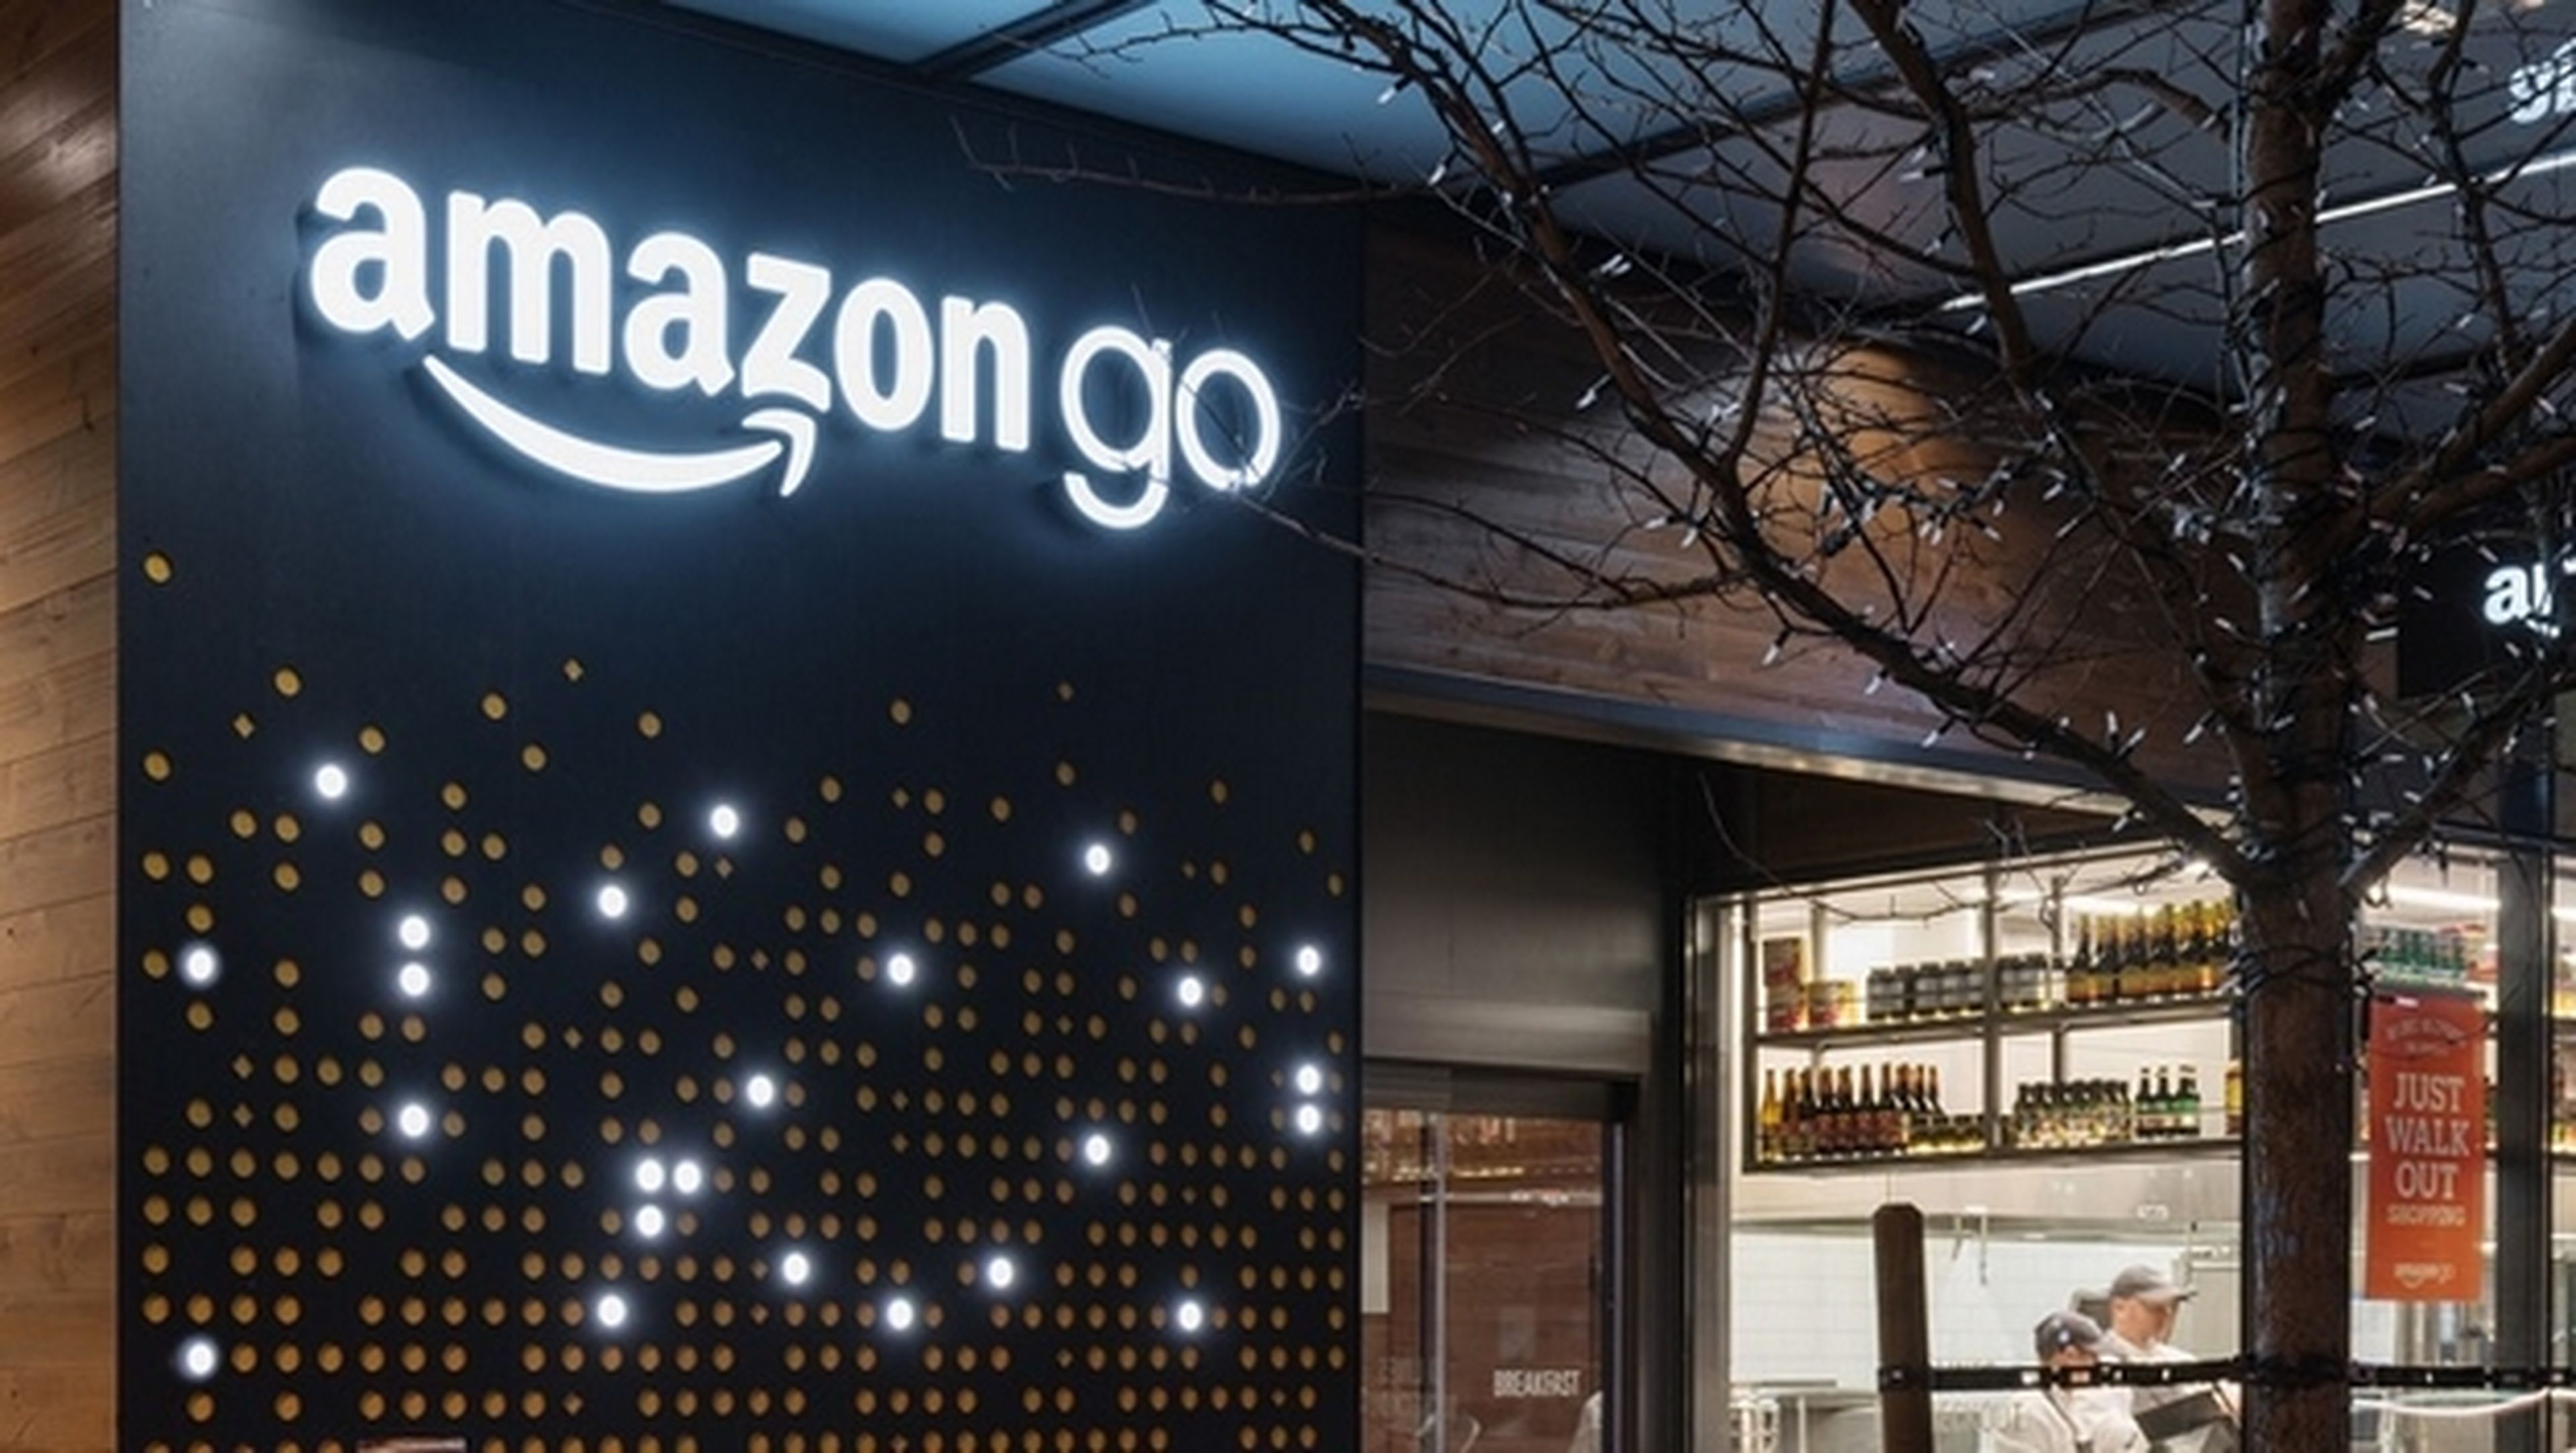 Abre Amazon Go, la tienda física sin empleados, sin colas y sin pagos